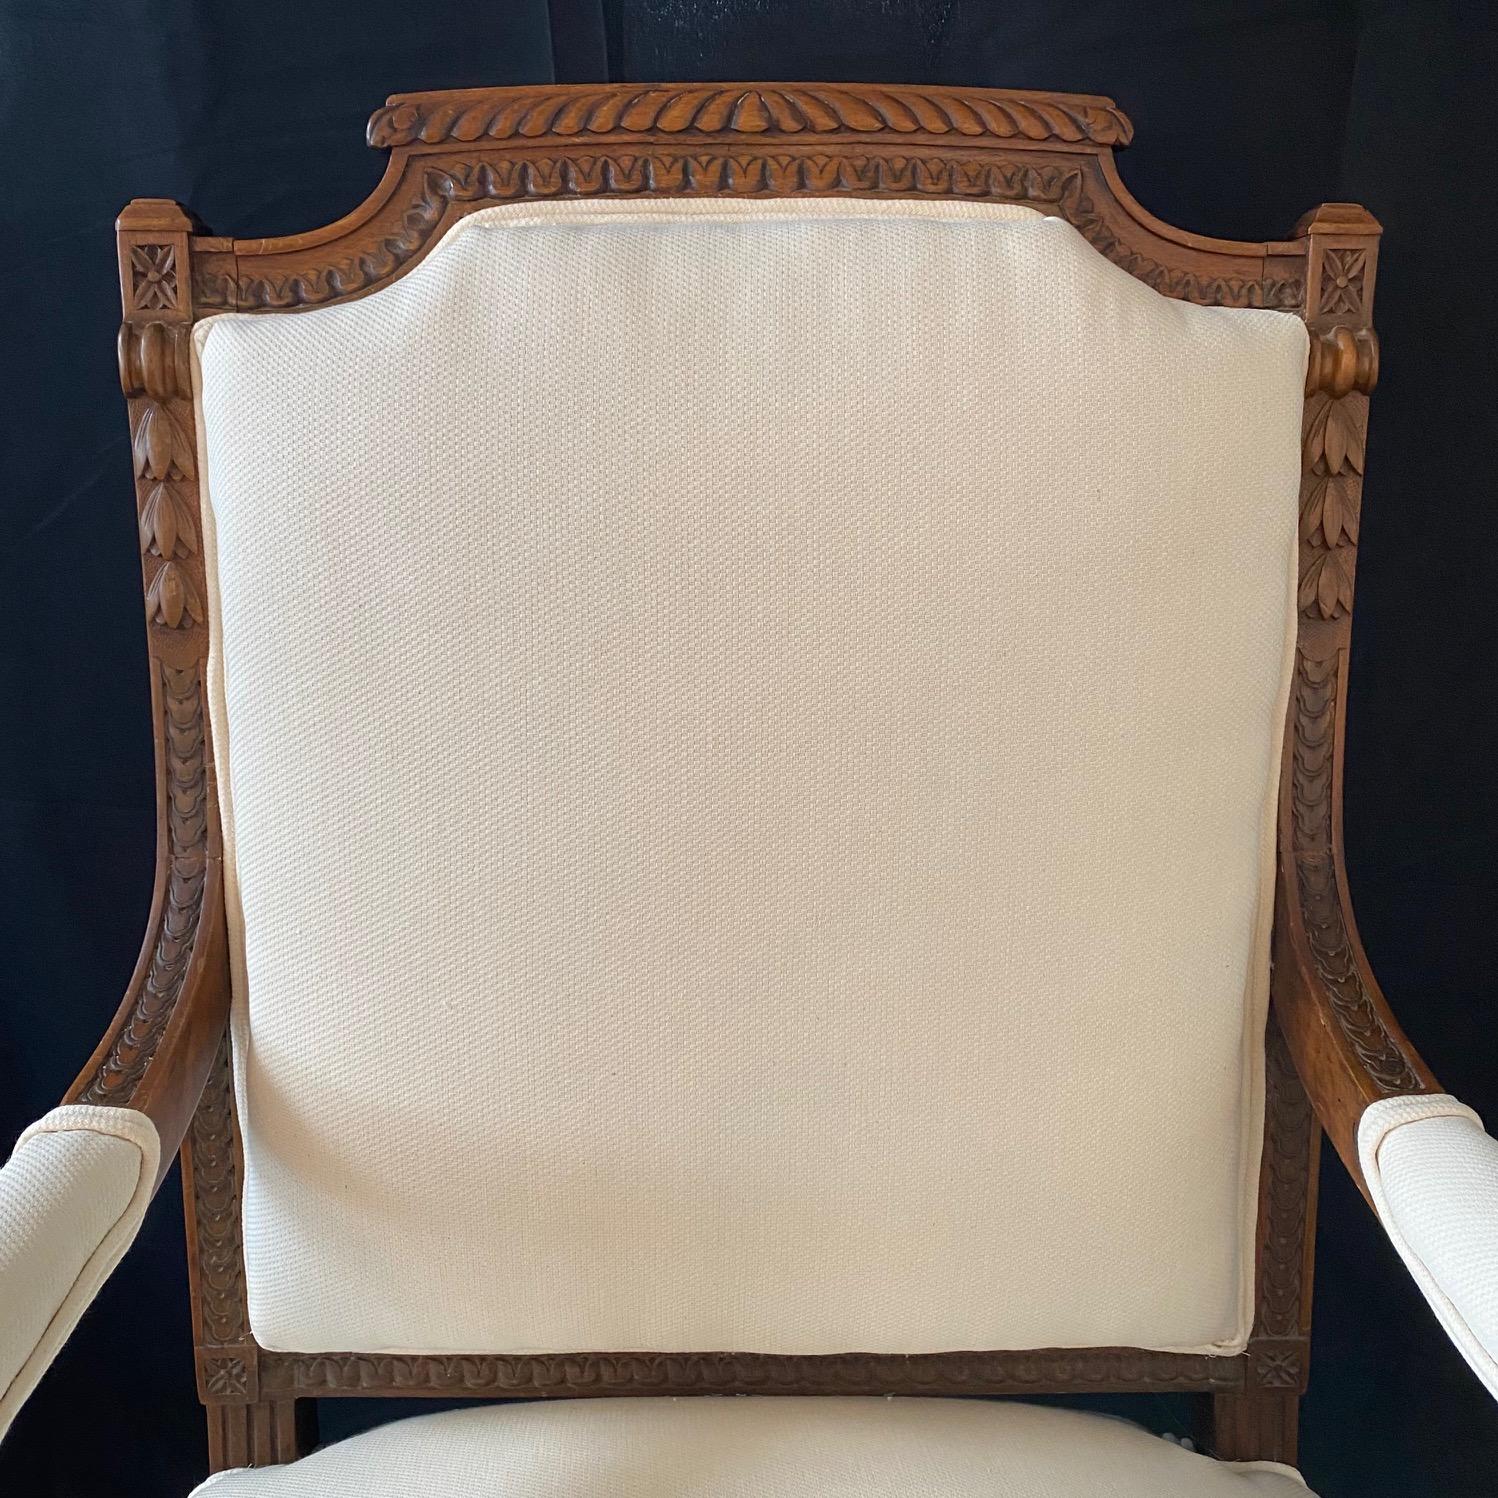 Schön geschnitzt exquisite neoklassischen Paar Nussbaum Französisch Stühle handgefertigt im frühen 19. Jahrhundert.  Jeder Stuhl besteht aus einem elegant geschnitzten Holzrahmen mit Akanthusblättern und Eckblüten, der mit einer neuen, hochwertigen